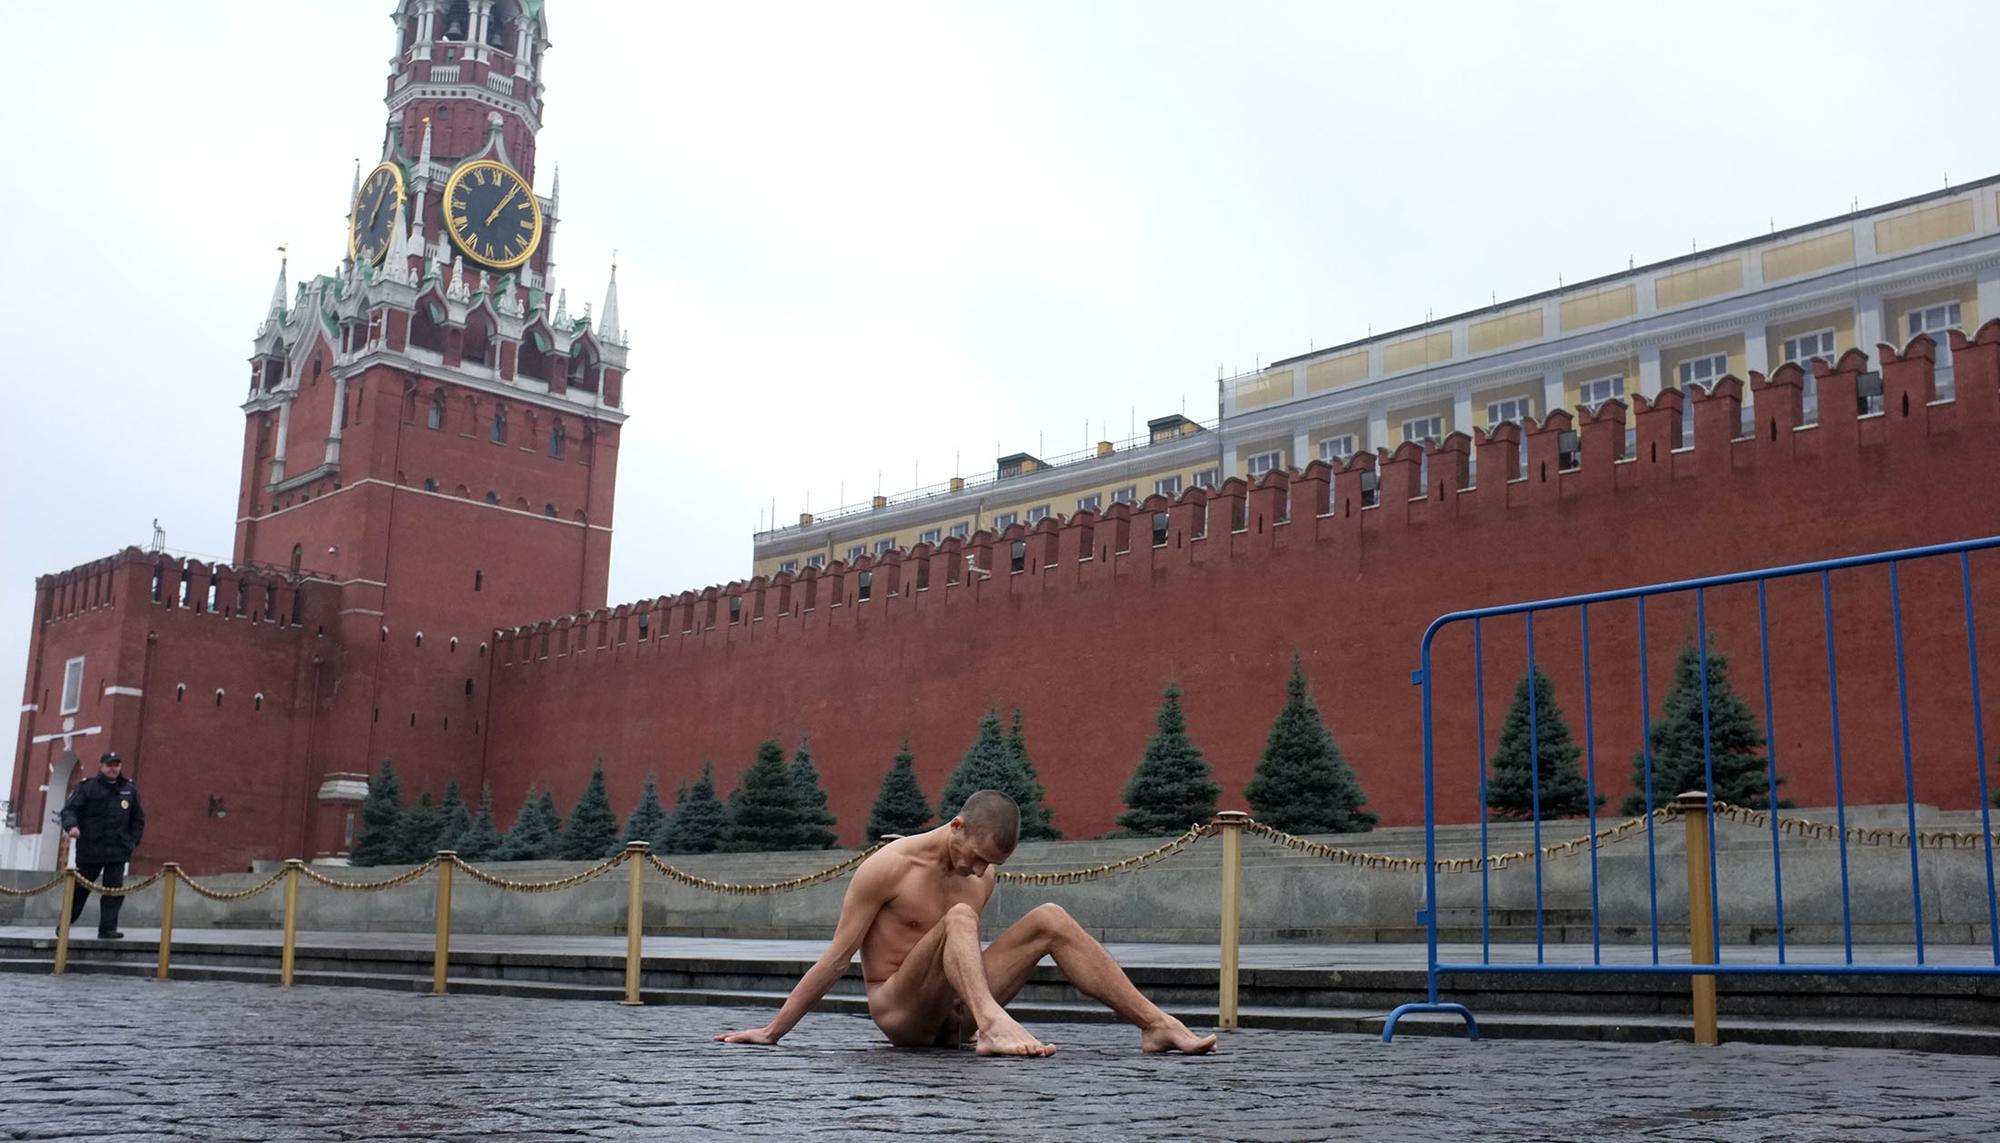 Petr Pavlensky